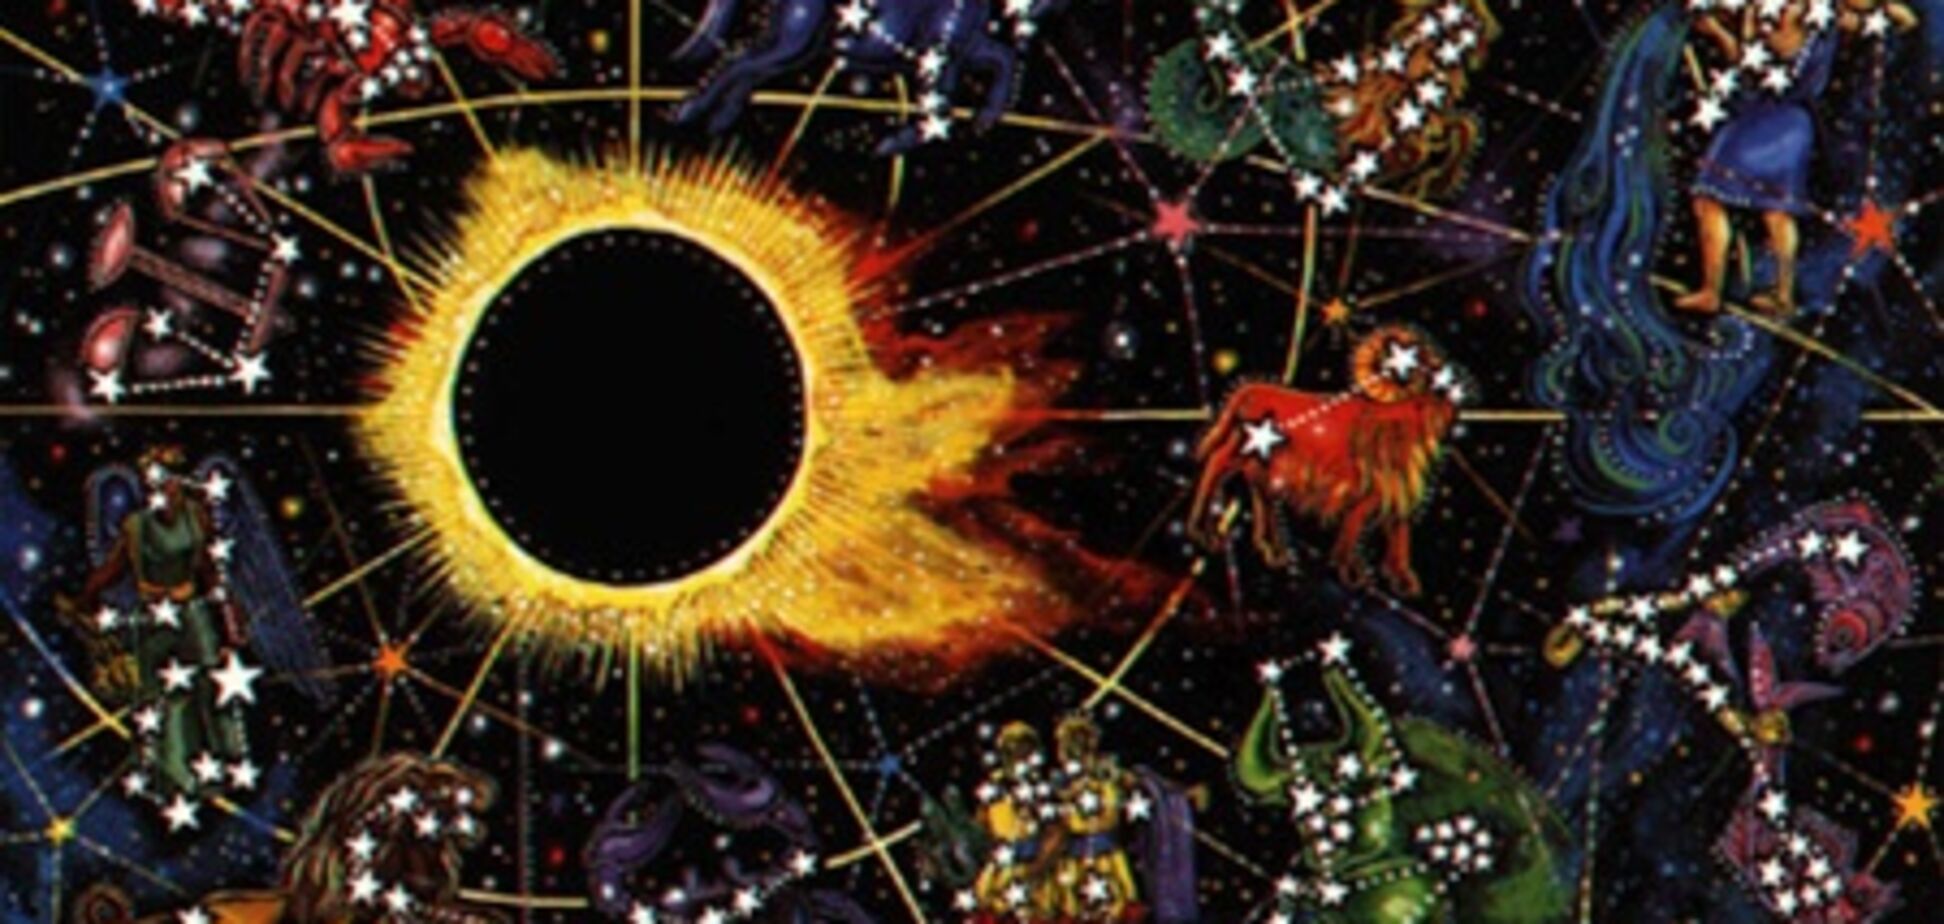 Используйте затмения 2012 года с пользой - астрологи